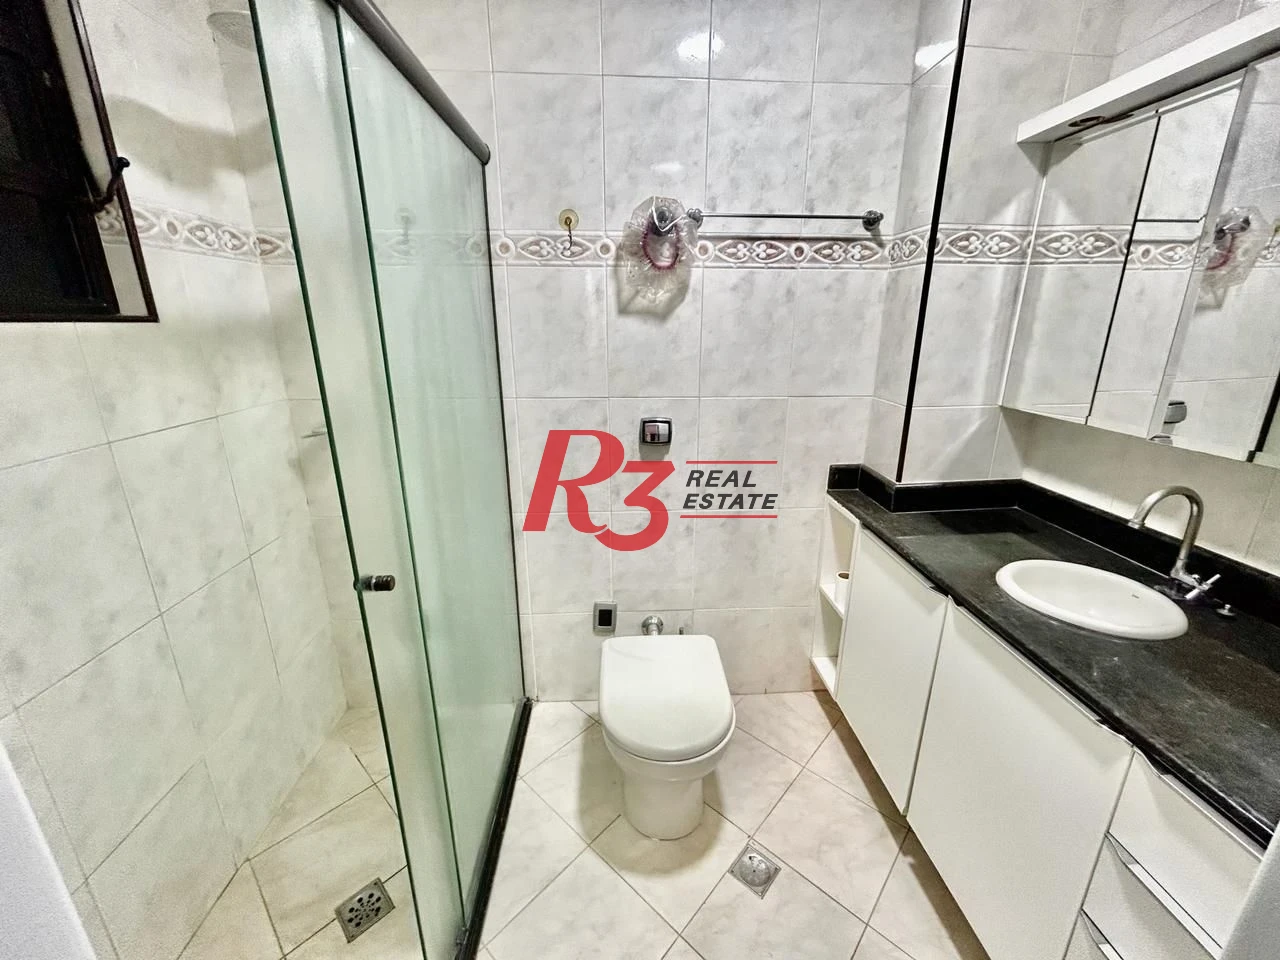 Apartamento com 3 dormitórios à venda, 116 m² por R$ 595.000 - Aparecida - Santos/SP